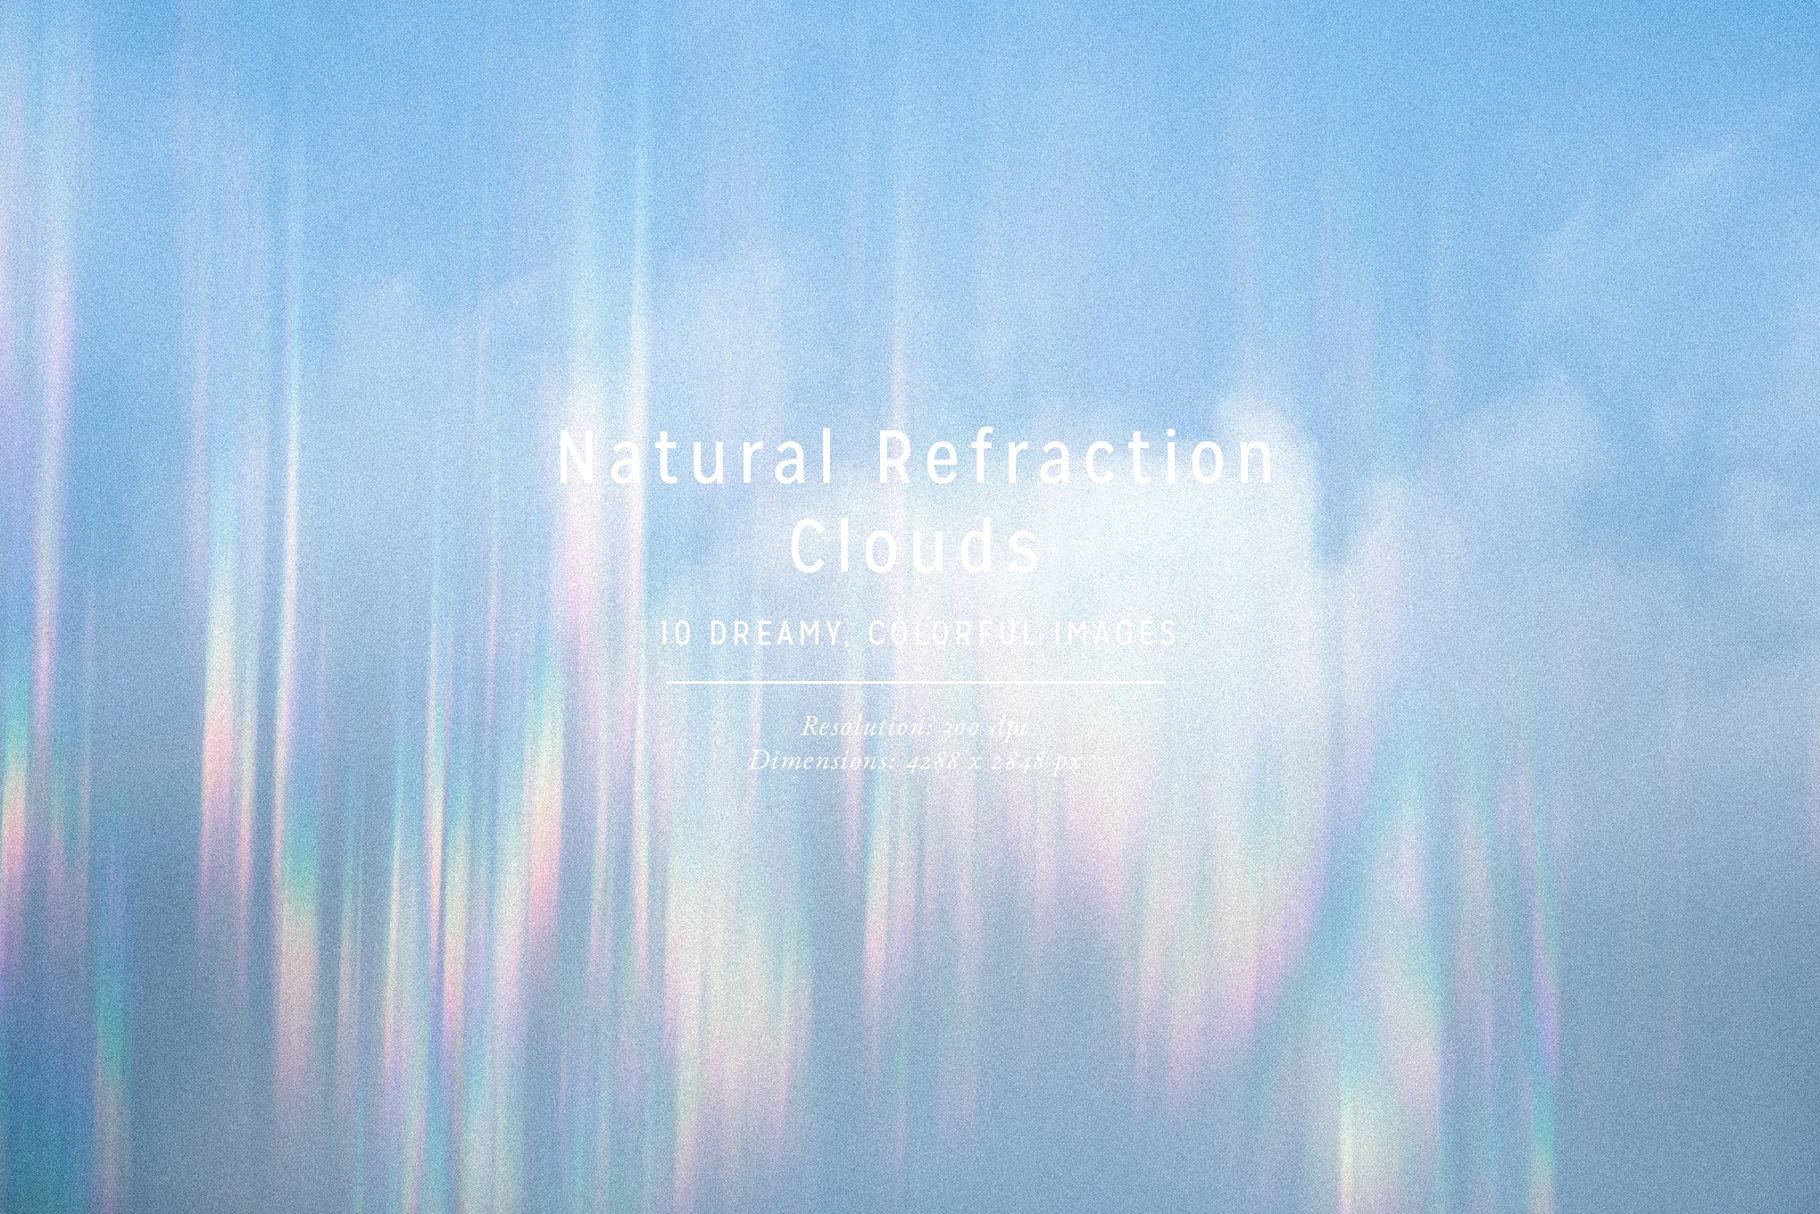 彩虹折射云彩高清照片素材 Natural Refraction: Clouds插图(2)